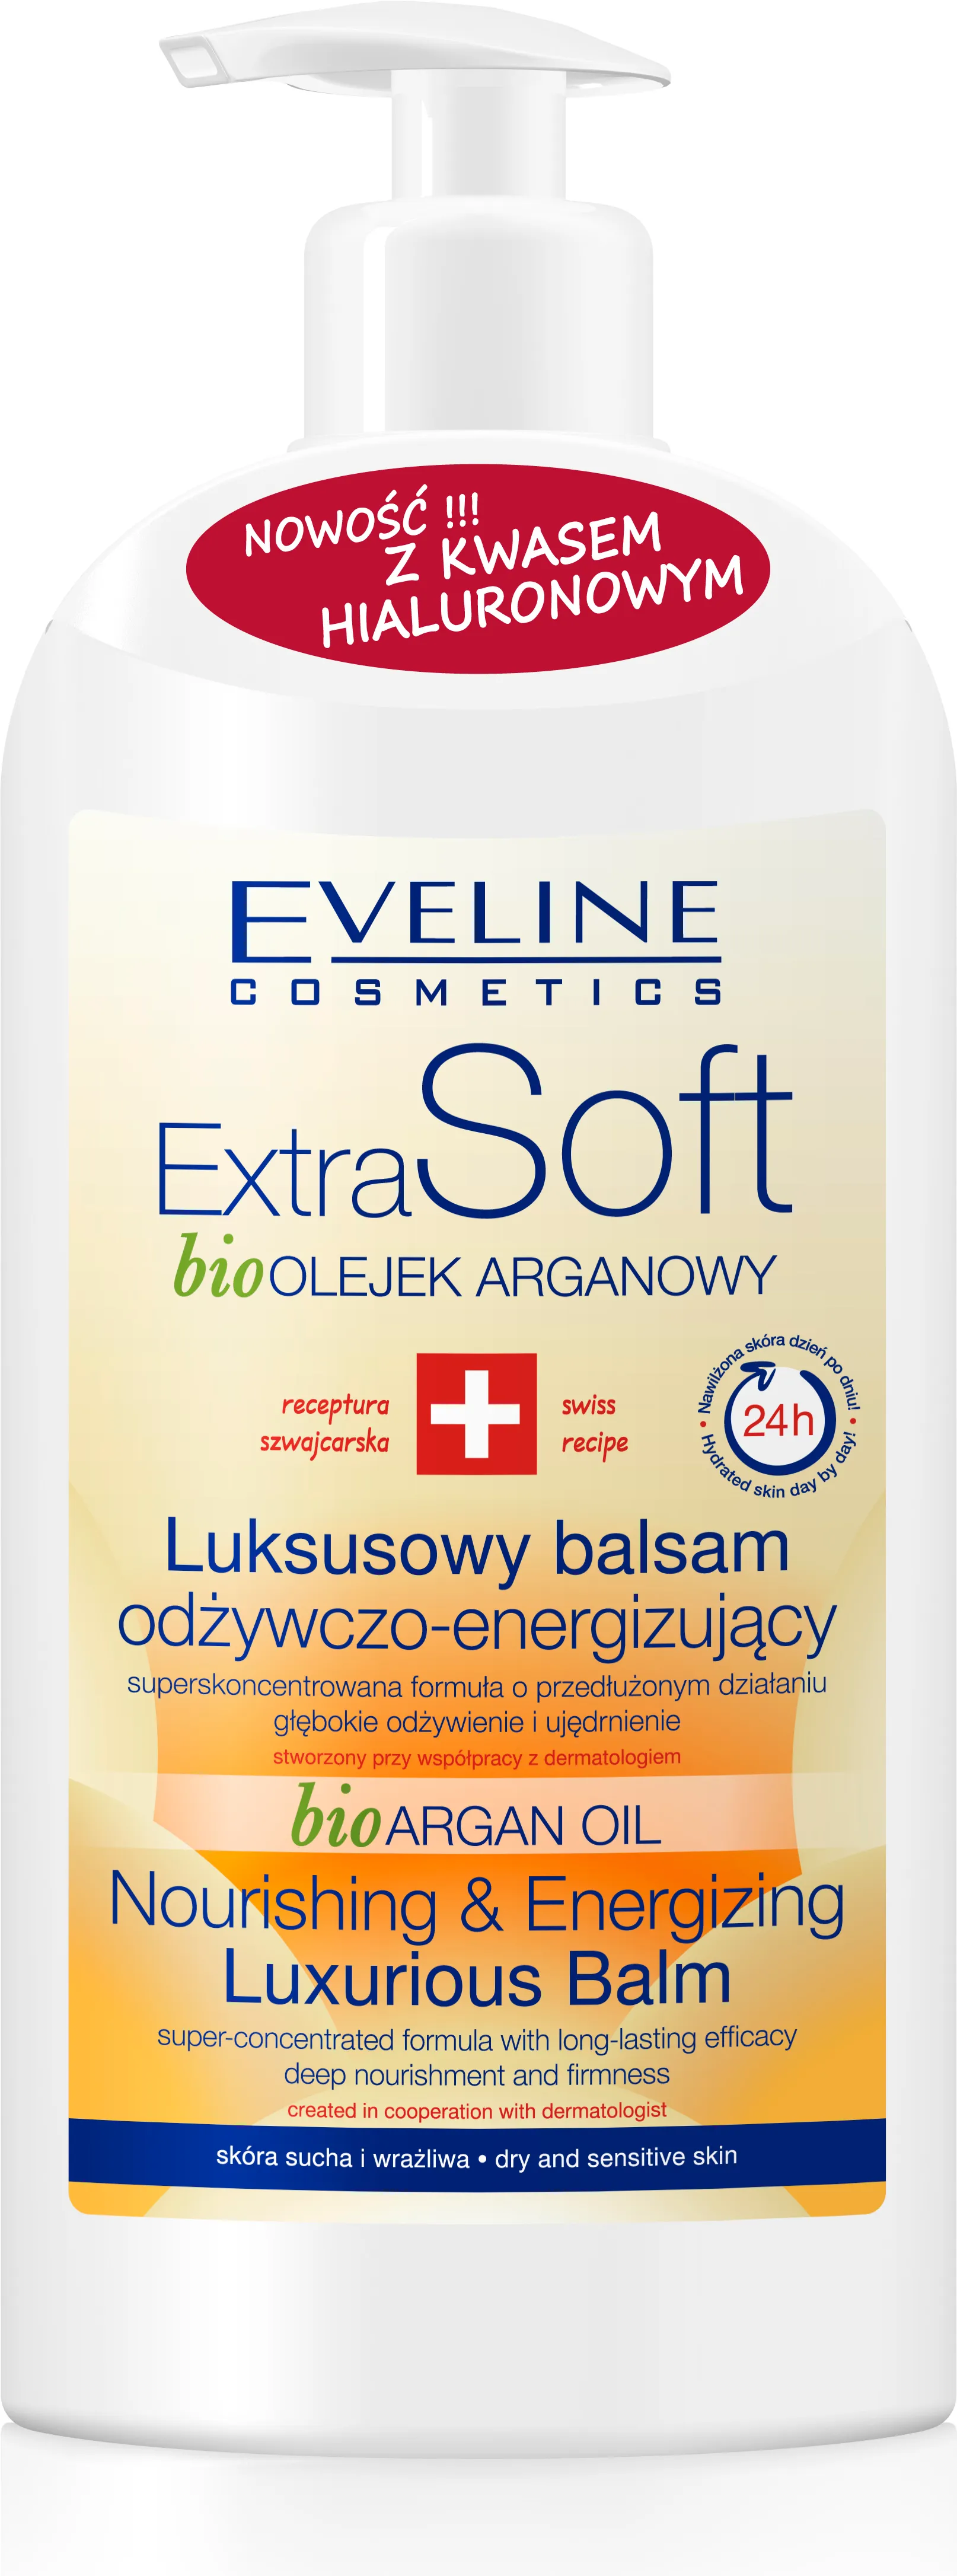 Eveline Cosmetics Extra Soft, luksusowy balsam odżywczo-energizujący, 350 ml